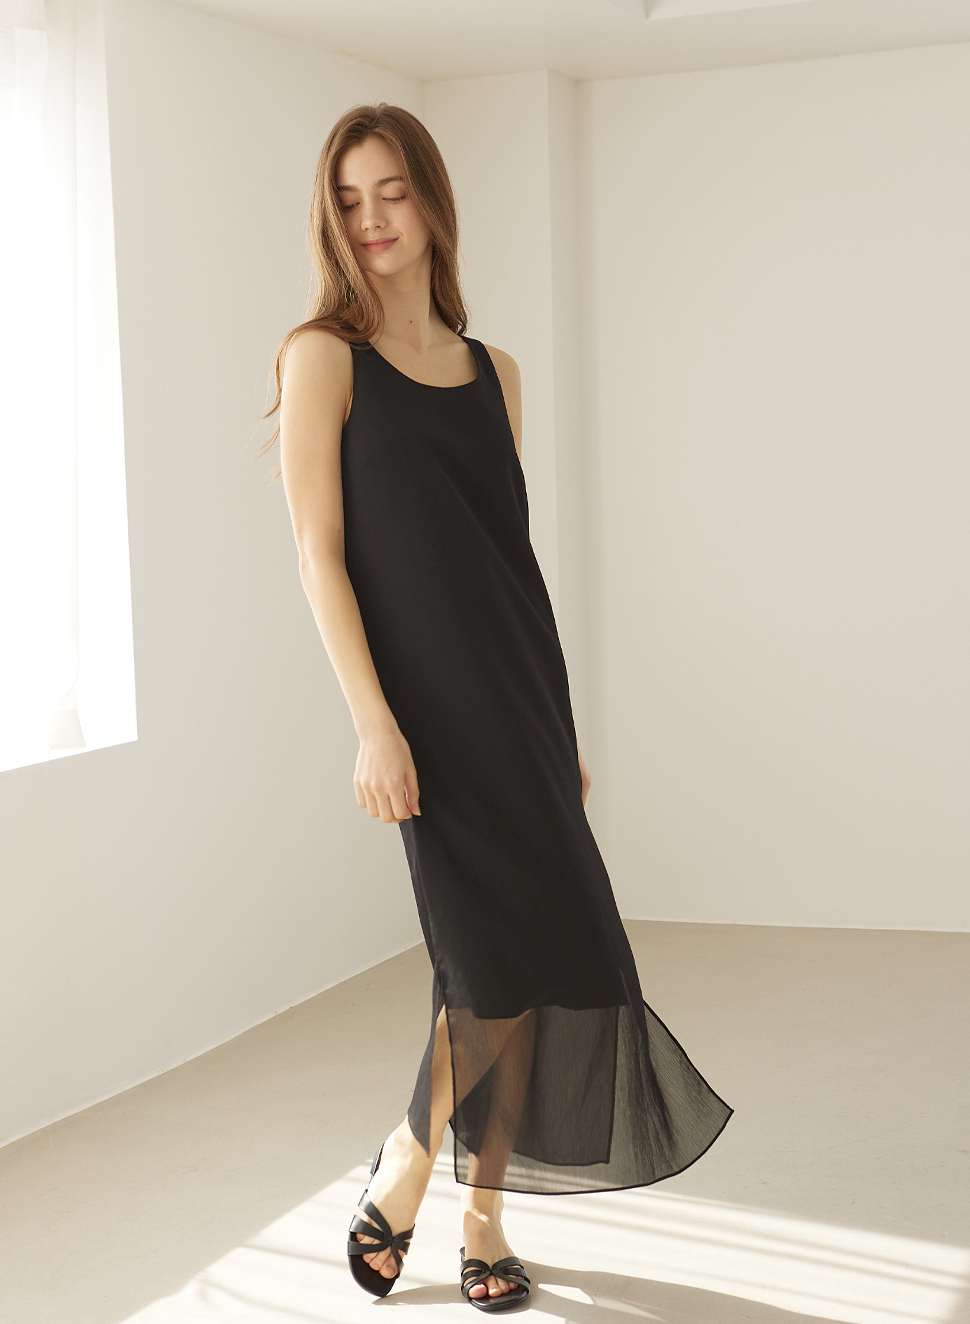 lamor dress (steinway black)